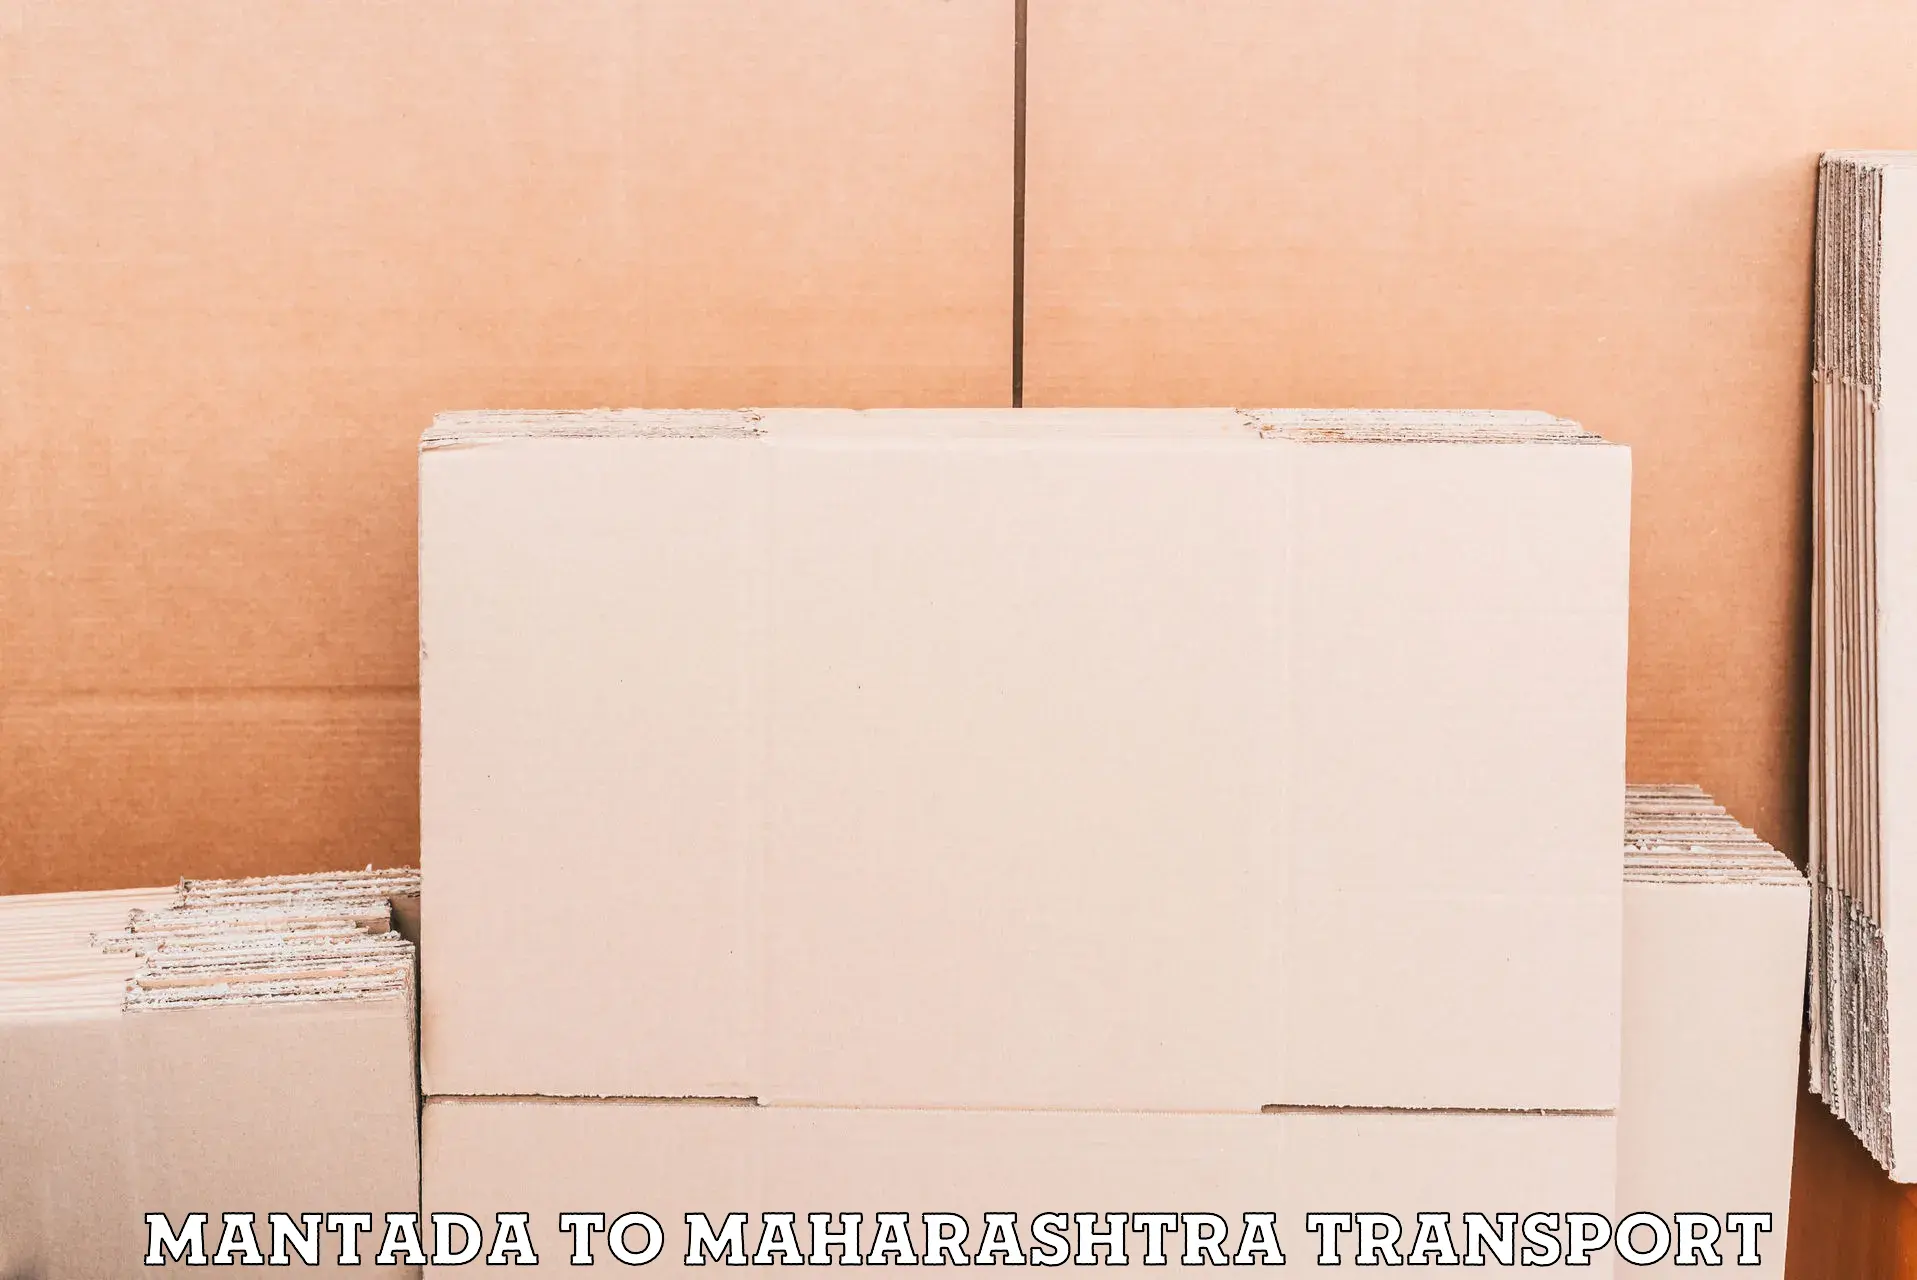 Cargo train transport services Mantada to Maharashtra